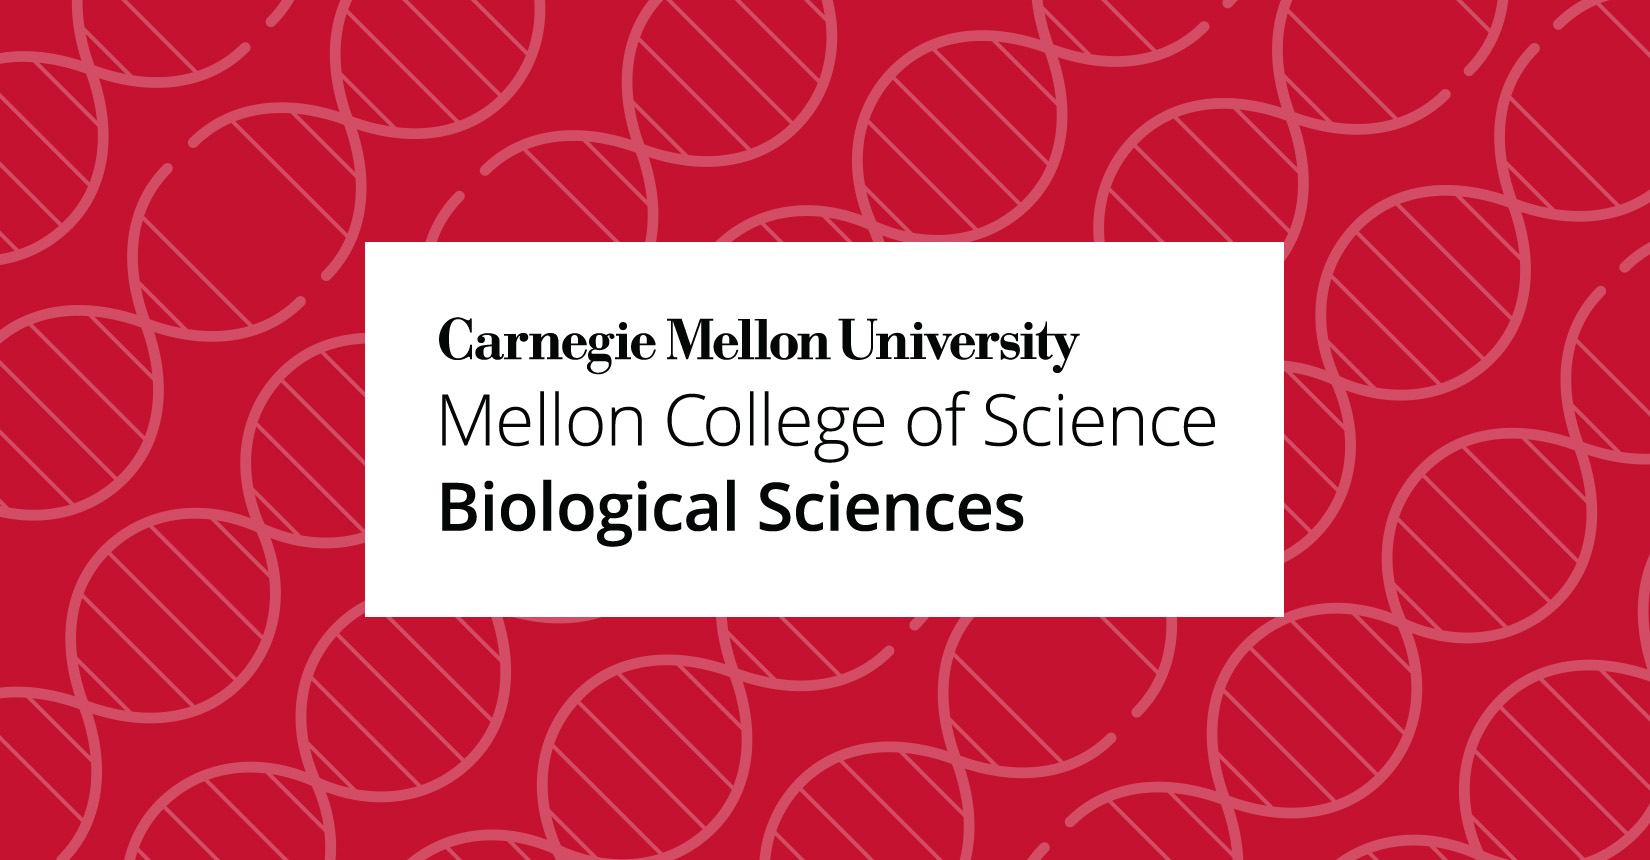 CarnegieMellonUniv MellonCollegeScience